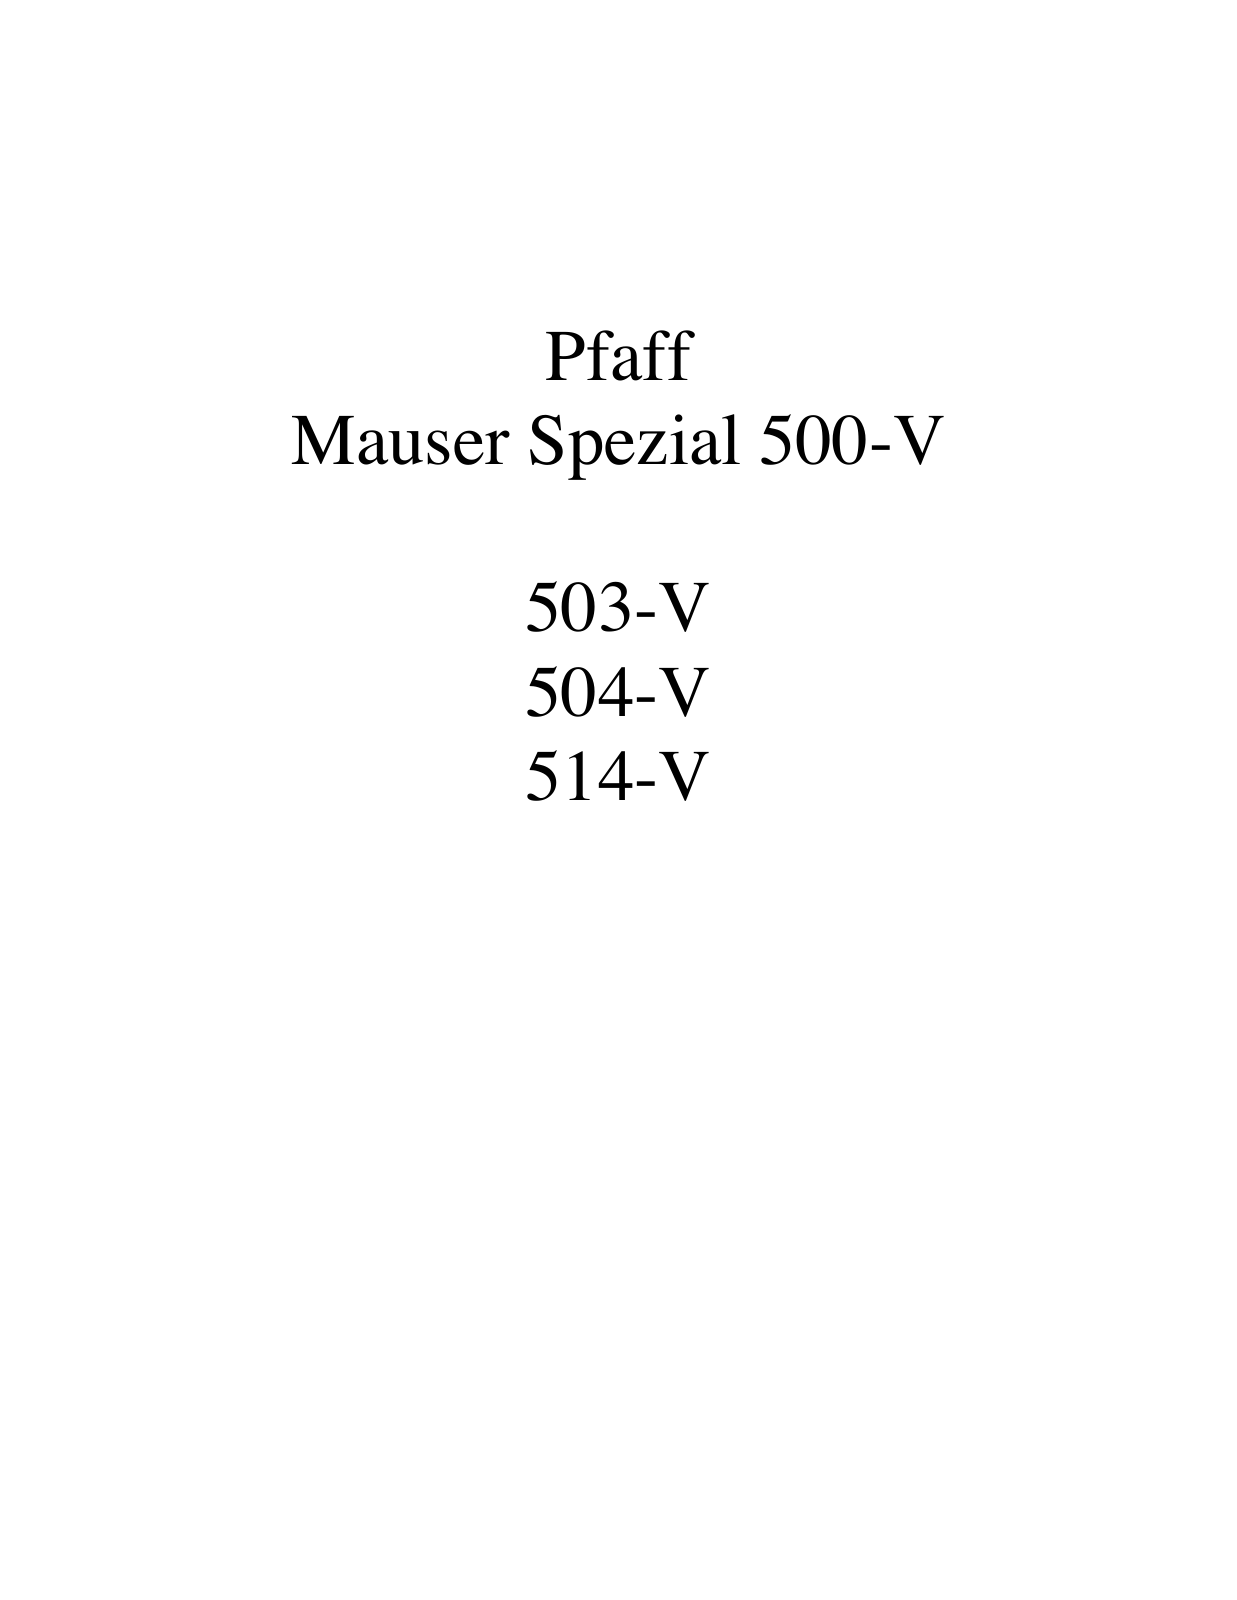 PFAFF 500-V, 503-V, 504-V, 514-V Parts List